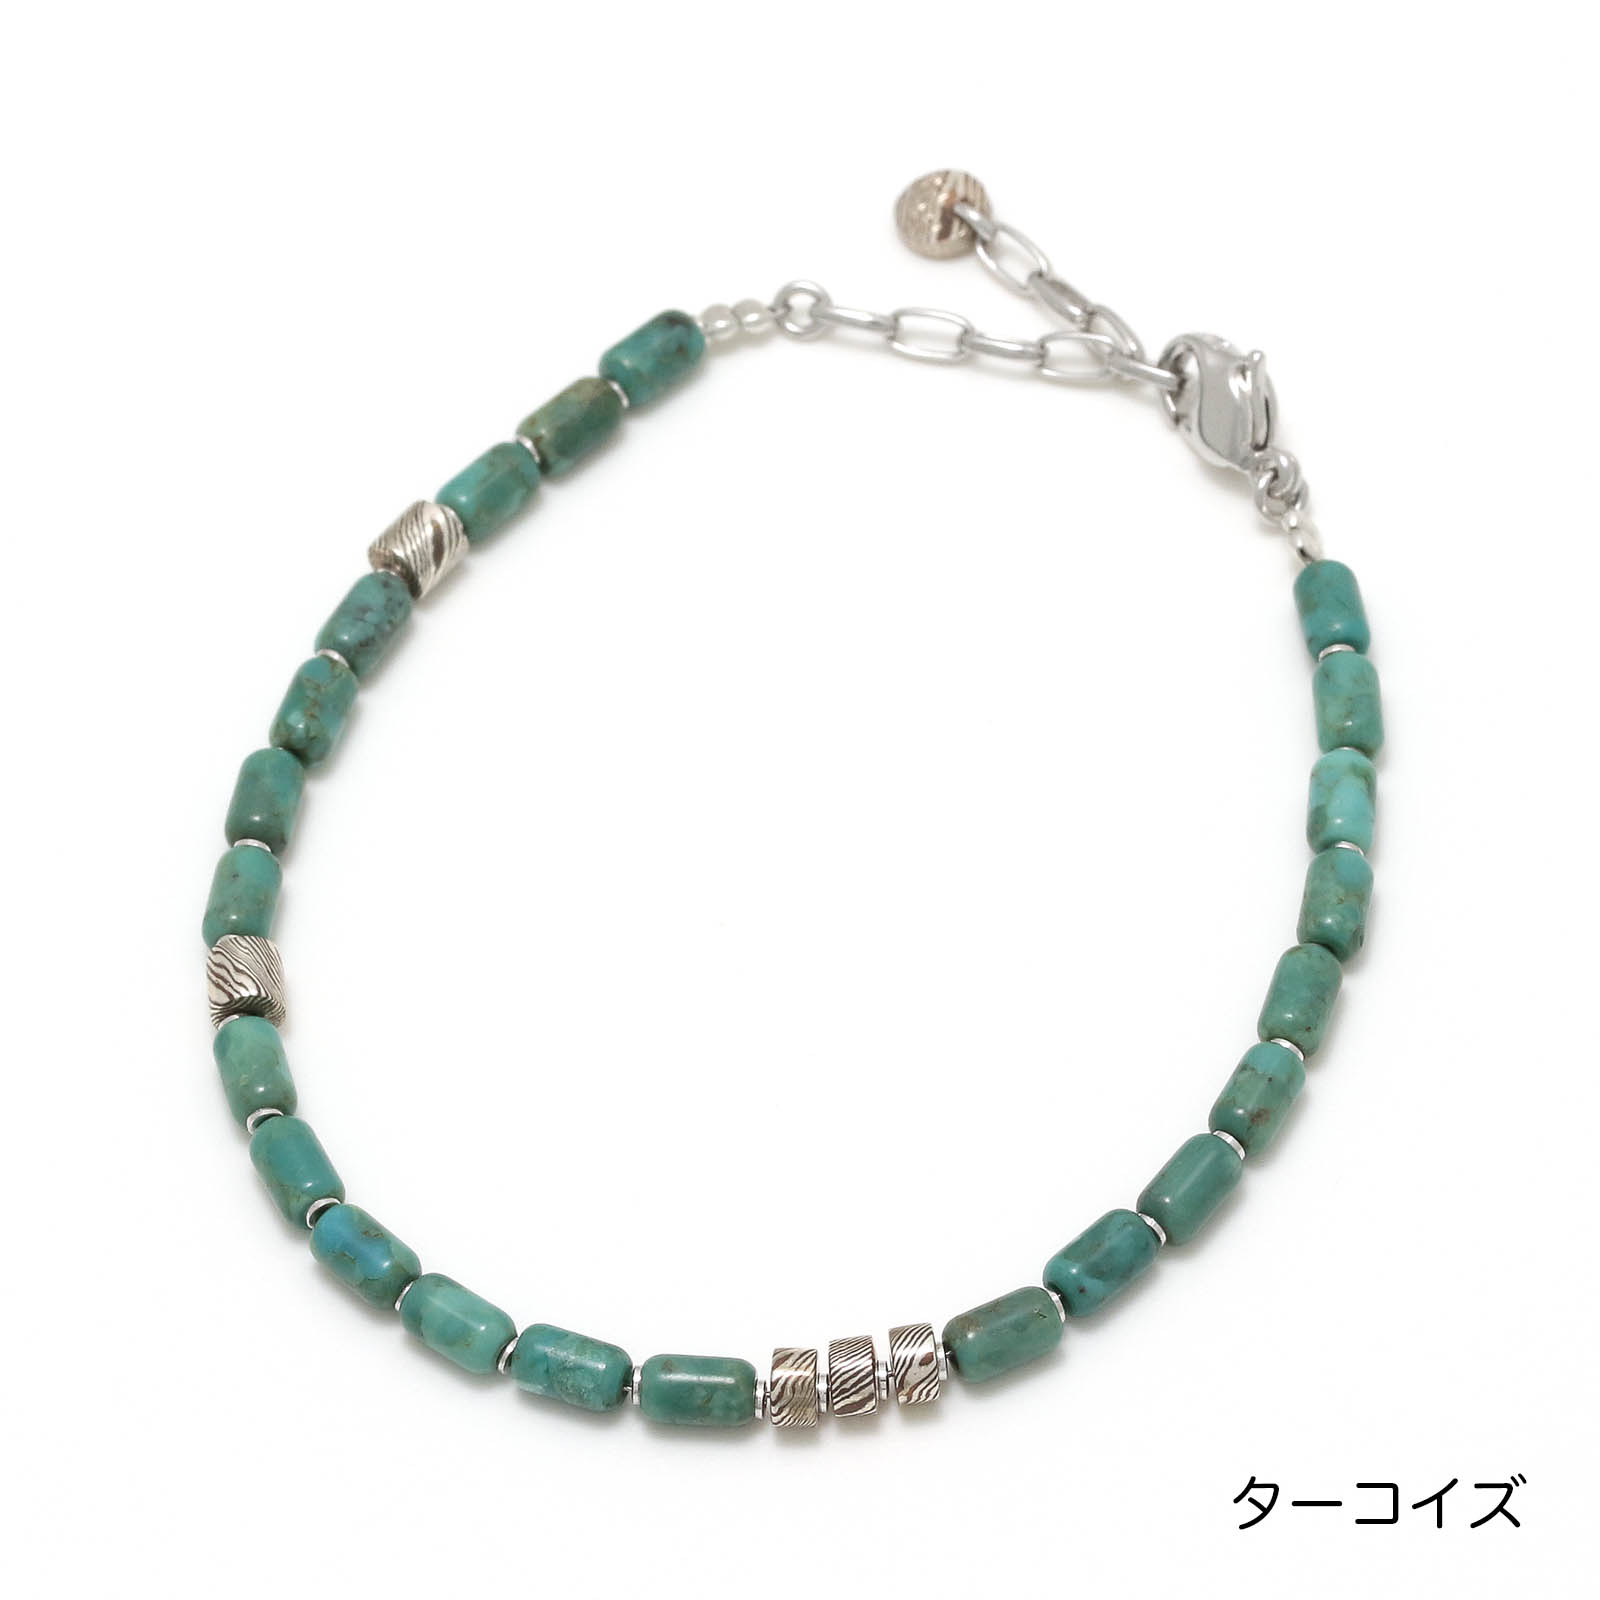 Tube Beads Bracelet - Turquoise